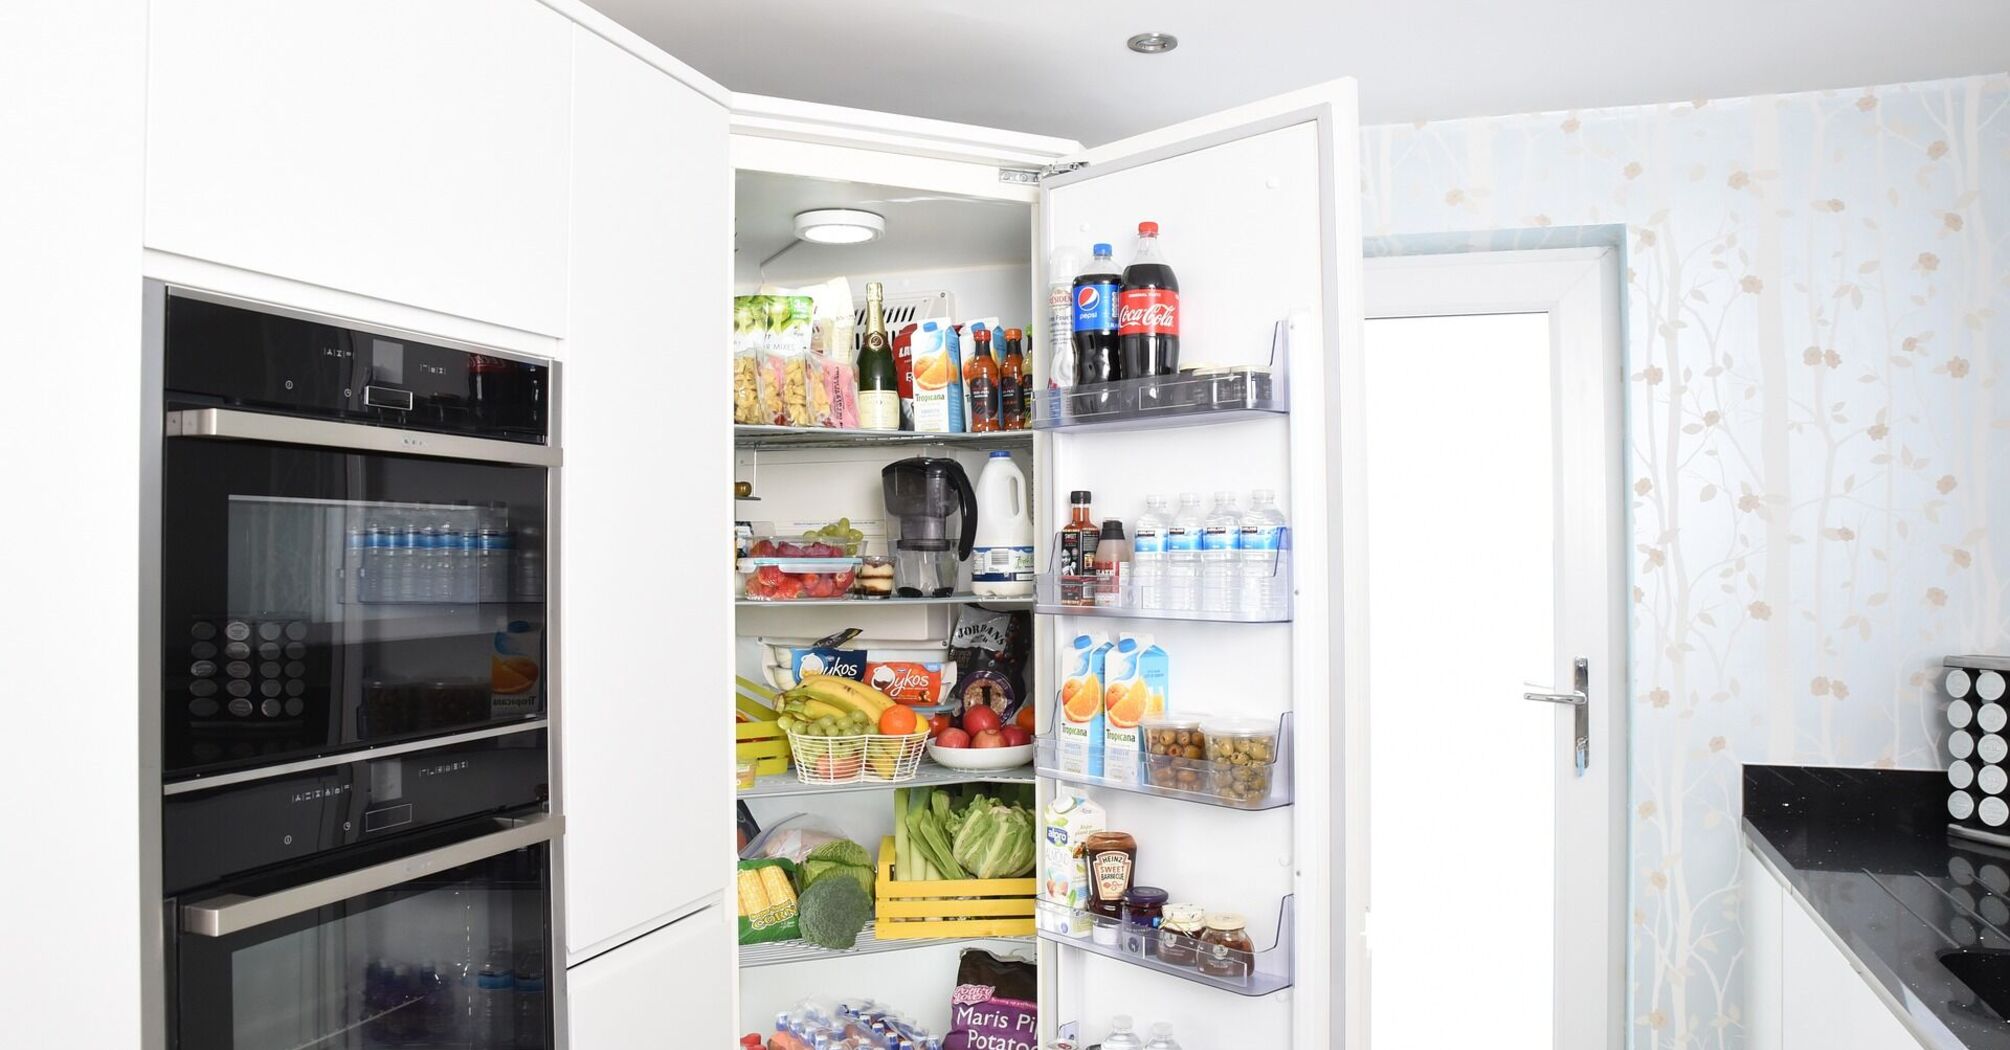 Холодильник може бути небезпечним? 9 секретів догляду за агрегатом та зберігання продуктів у ньому